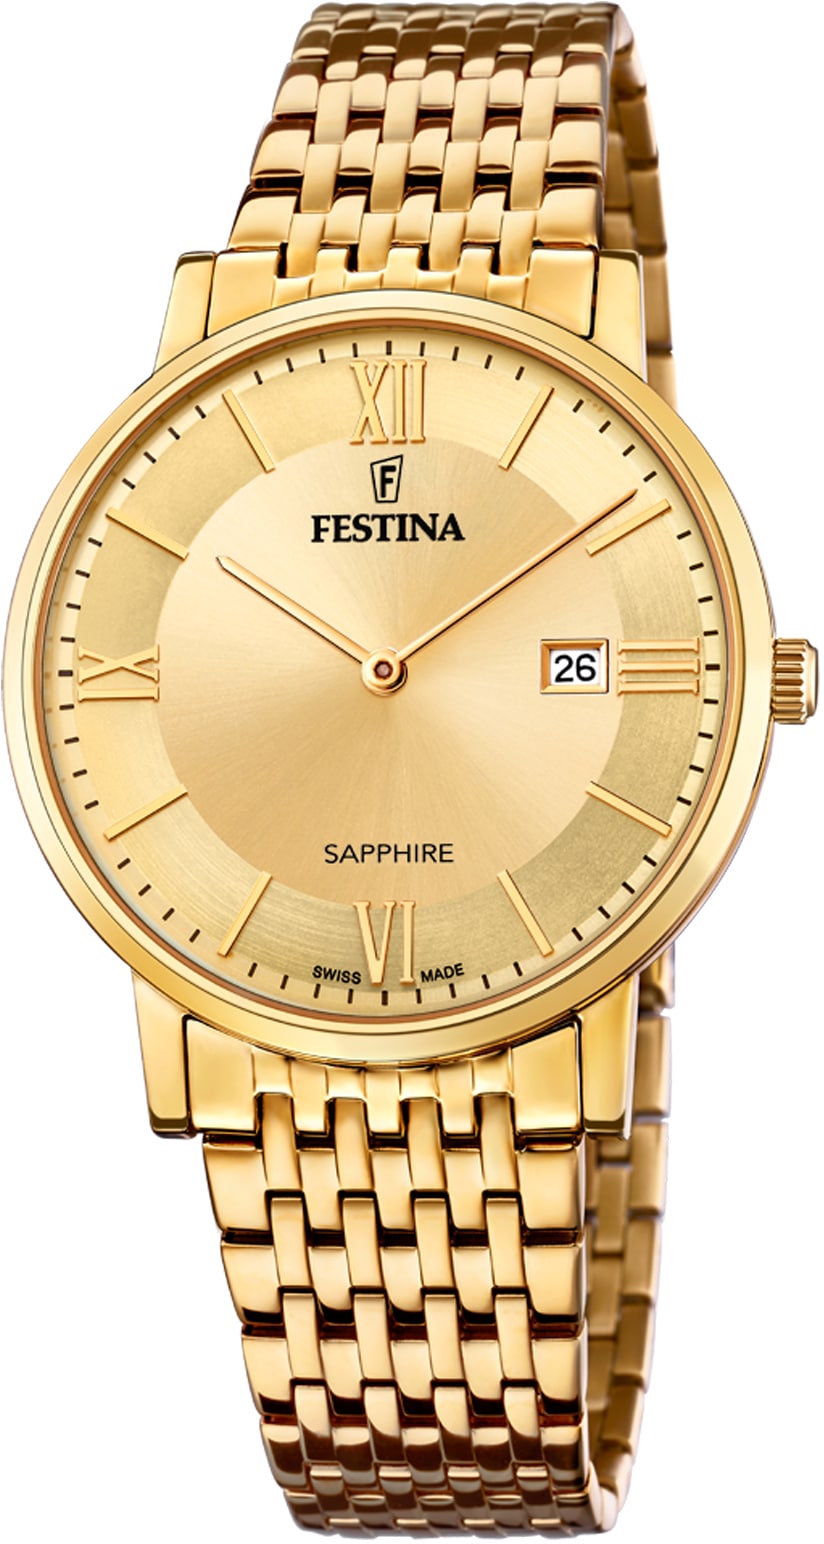 Festina Schweizer Uhr »Festina bei F20020/2« Swiss OTTO online bestellen Made